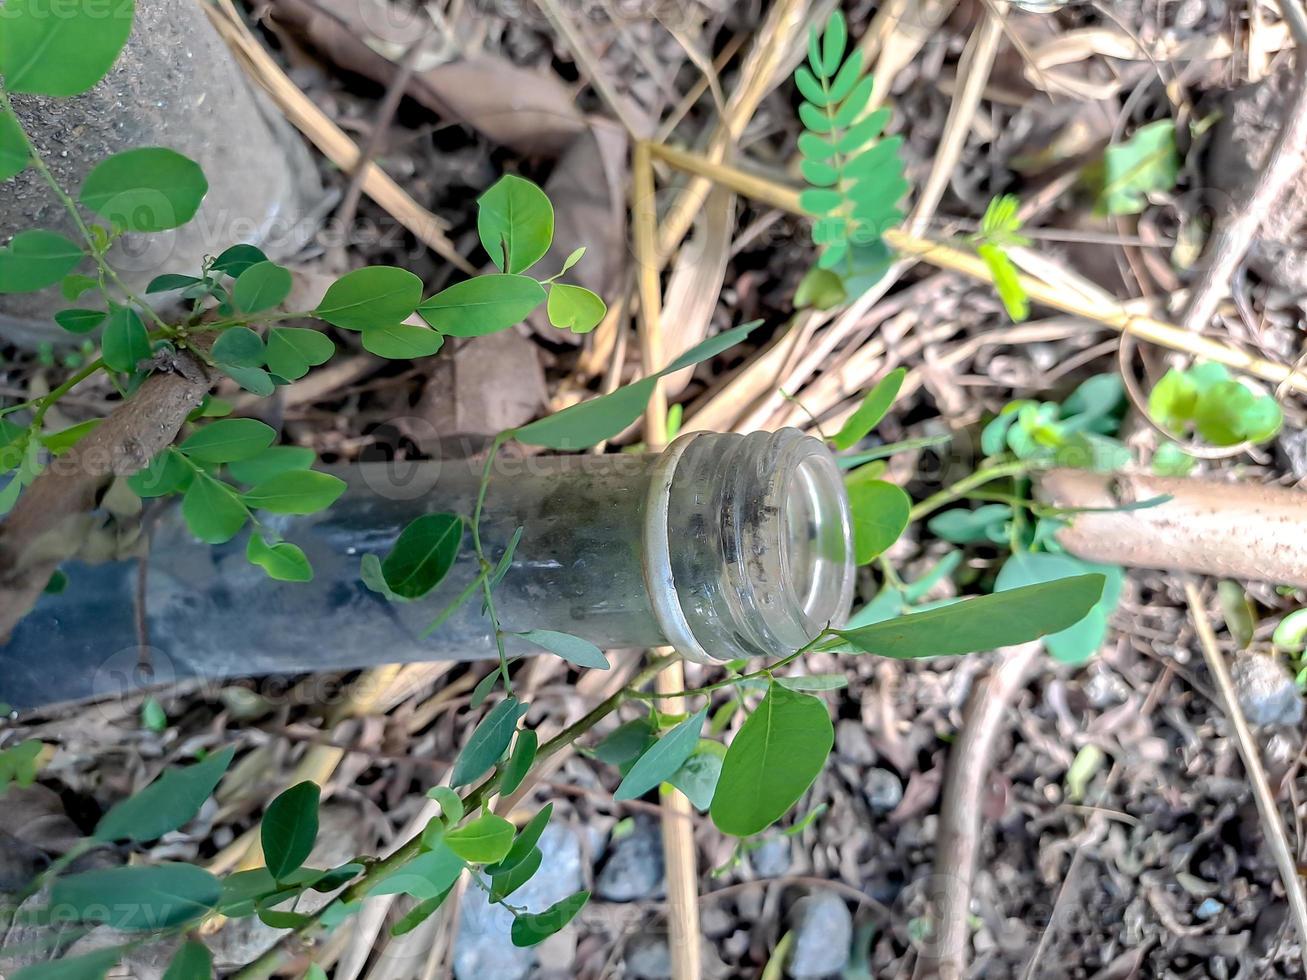 gebruikt siroop flessen ingebed in de grond met groen gras in tussen de flessen. foto